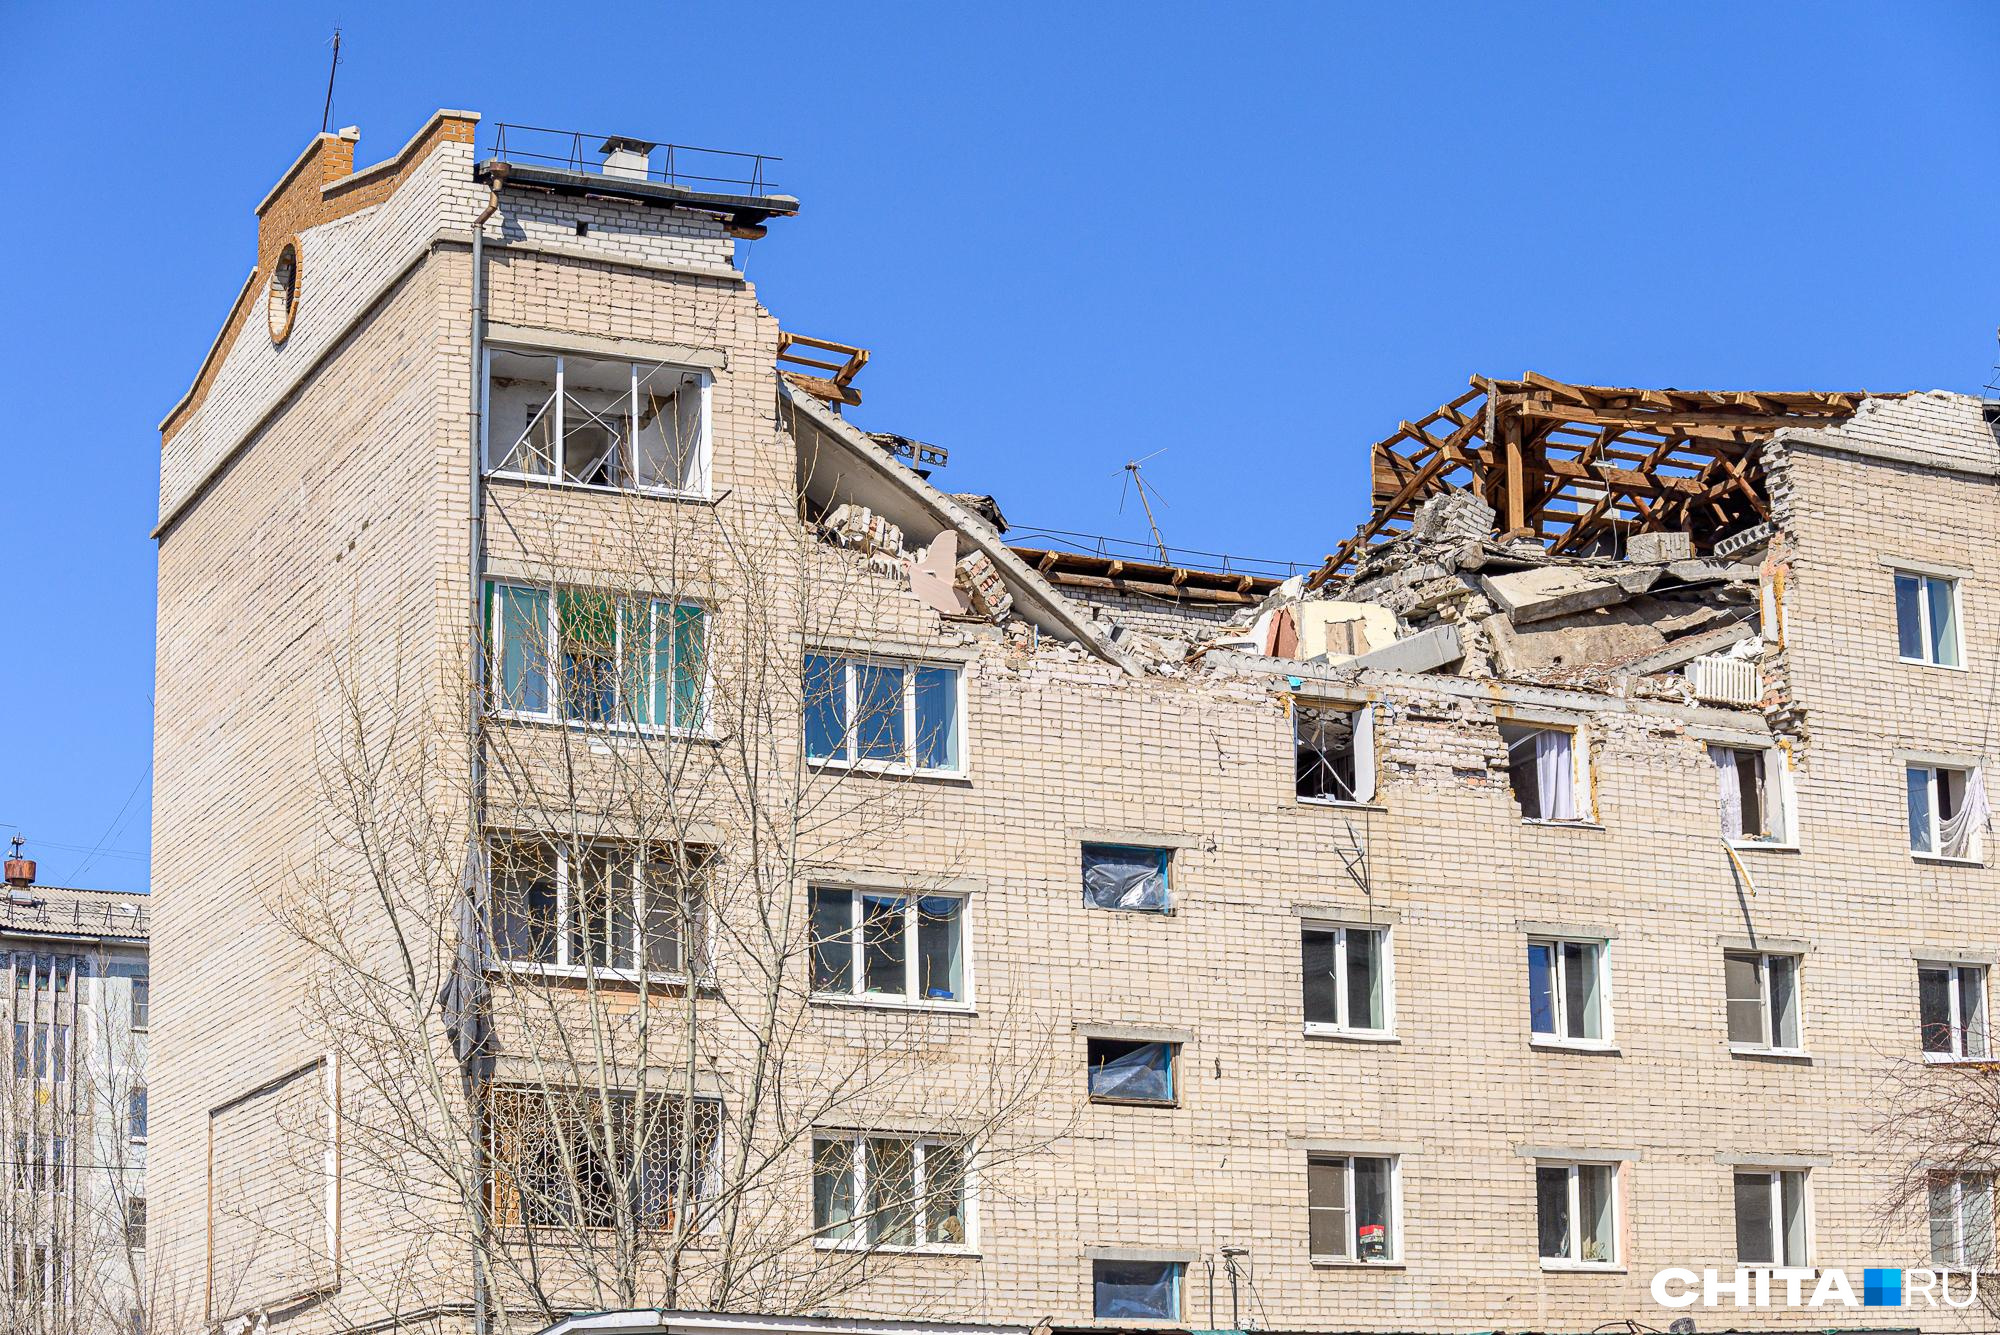 Дом в Чите подготовили для реконструкции после взрыва газа